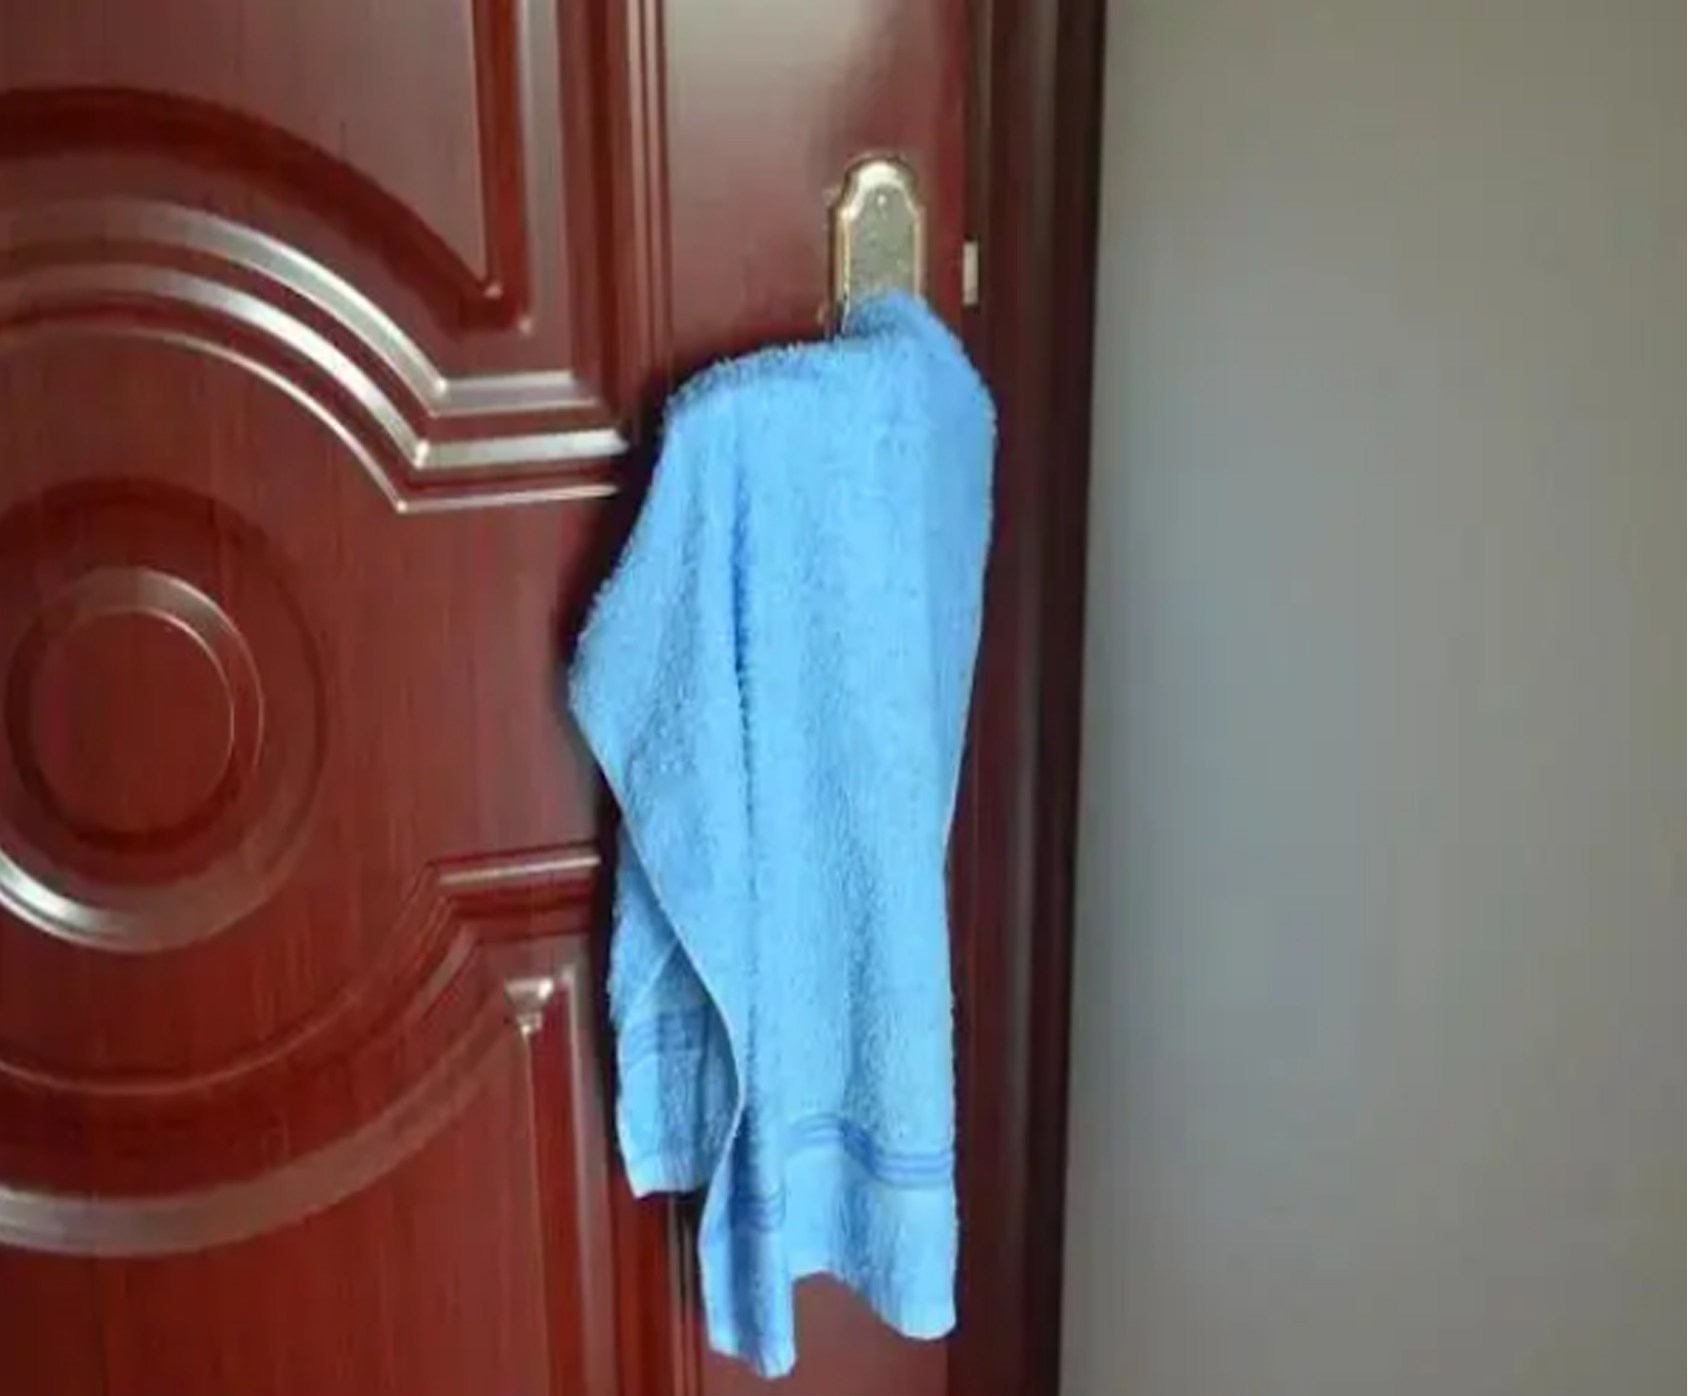 Buổi t.ối trước khi đi ngủ t.ốt nhất nên treo khăn tắm trên nắm cửa, lợi kh.ông ng.ờ nhưng ít người biết